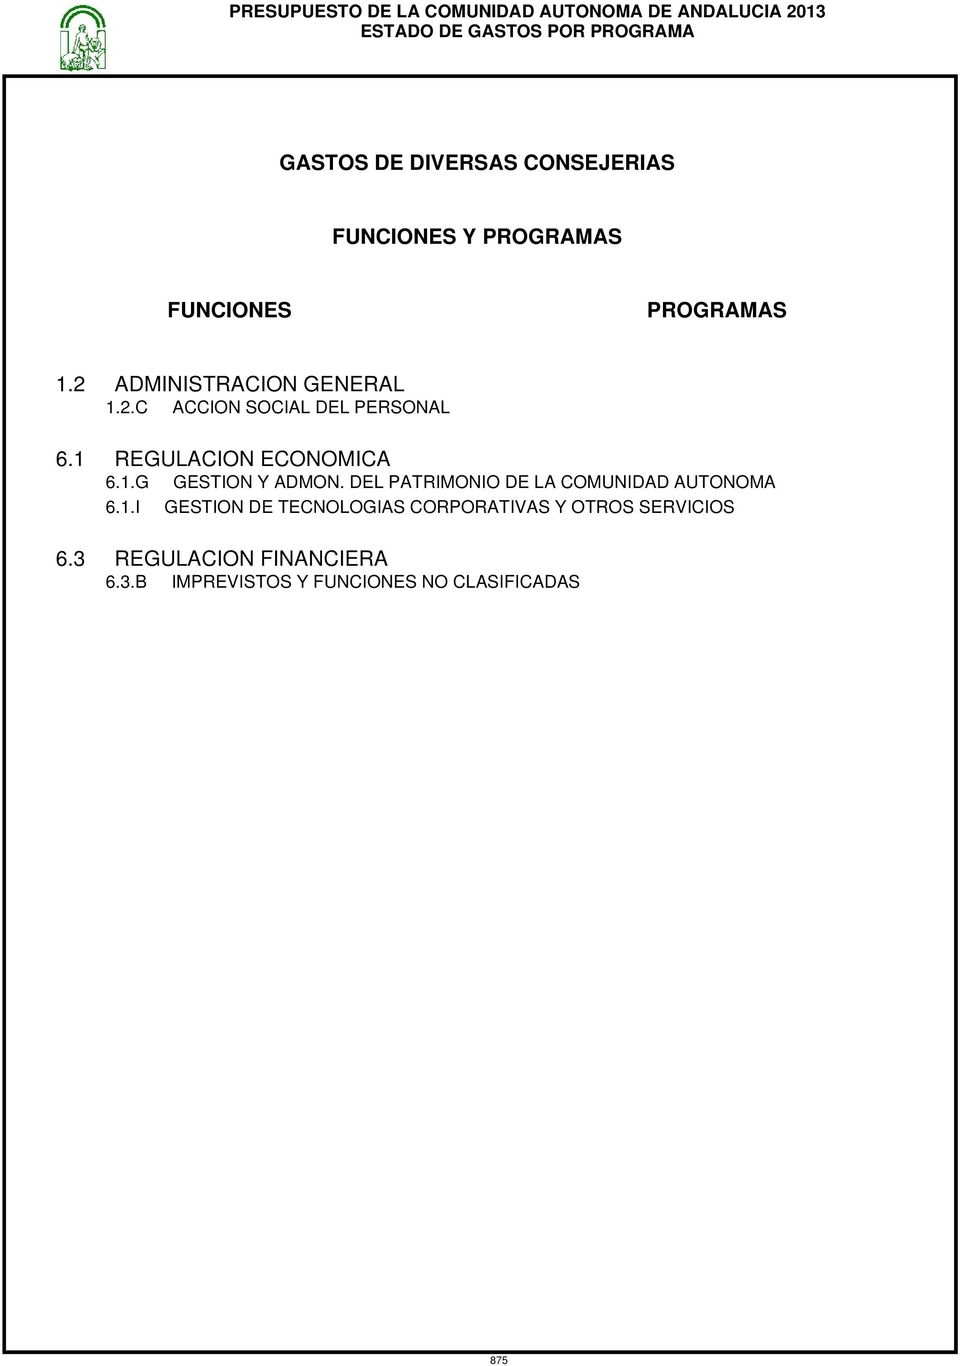 1.G GESTION Y ADMON. DEL PATRIMONIO DE LA COMUNIDAD AUTONOMA 6.1.I GESTION DE TECNOLOGIAS CORPORATIVAS Y OTROS SERVICIOS 6.